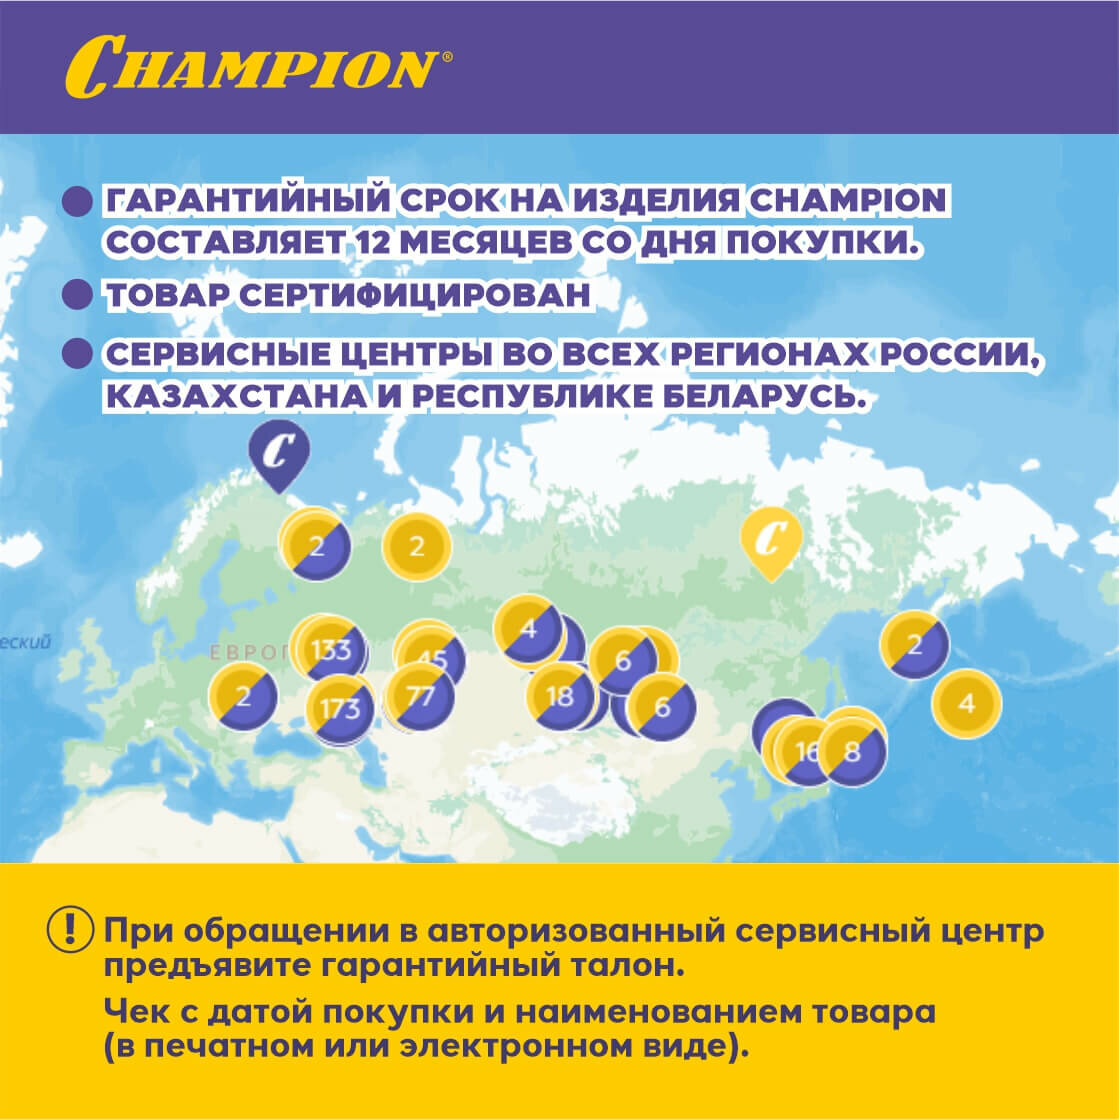 Электрическая пила Champion 116-14